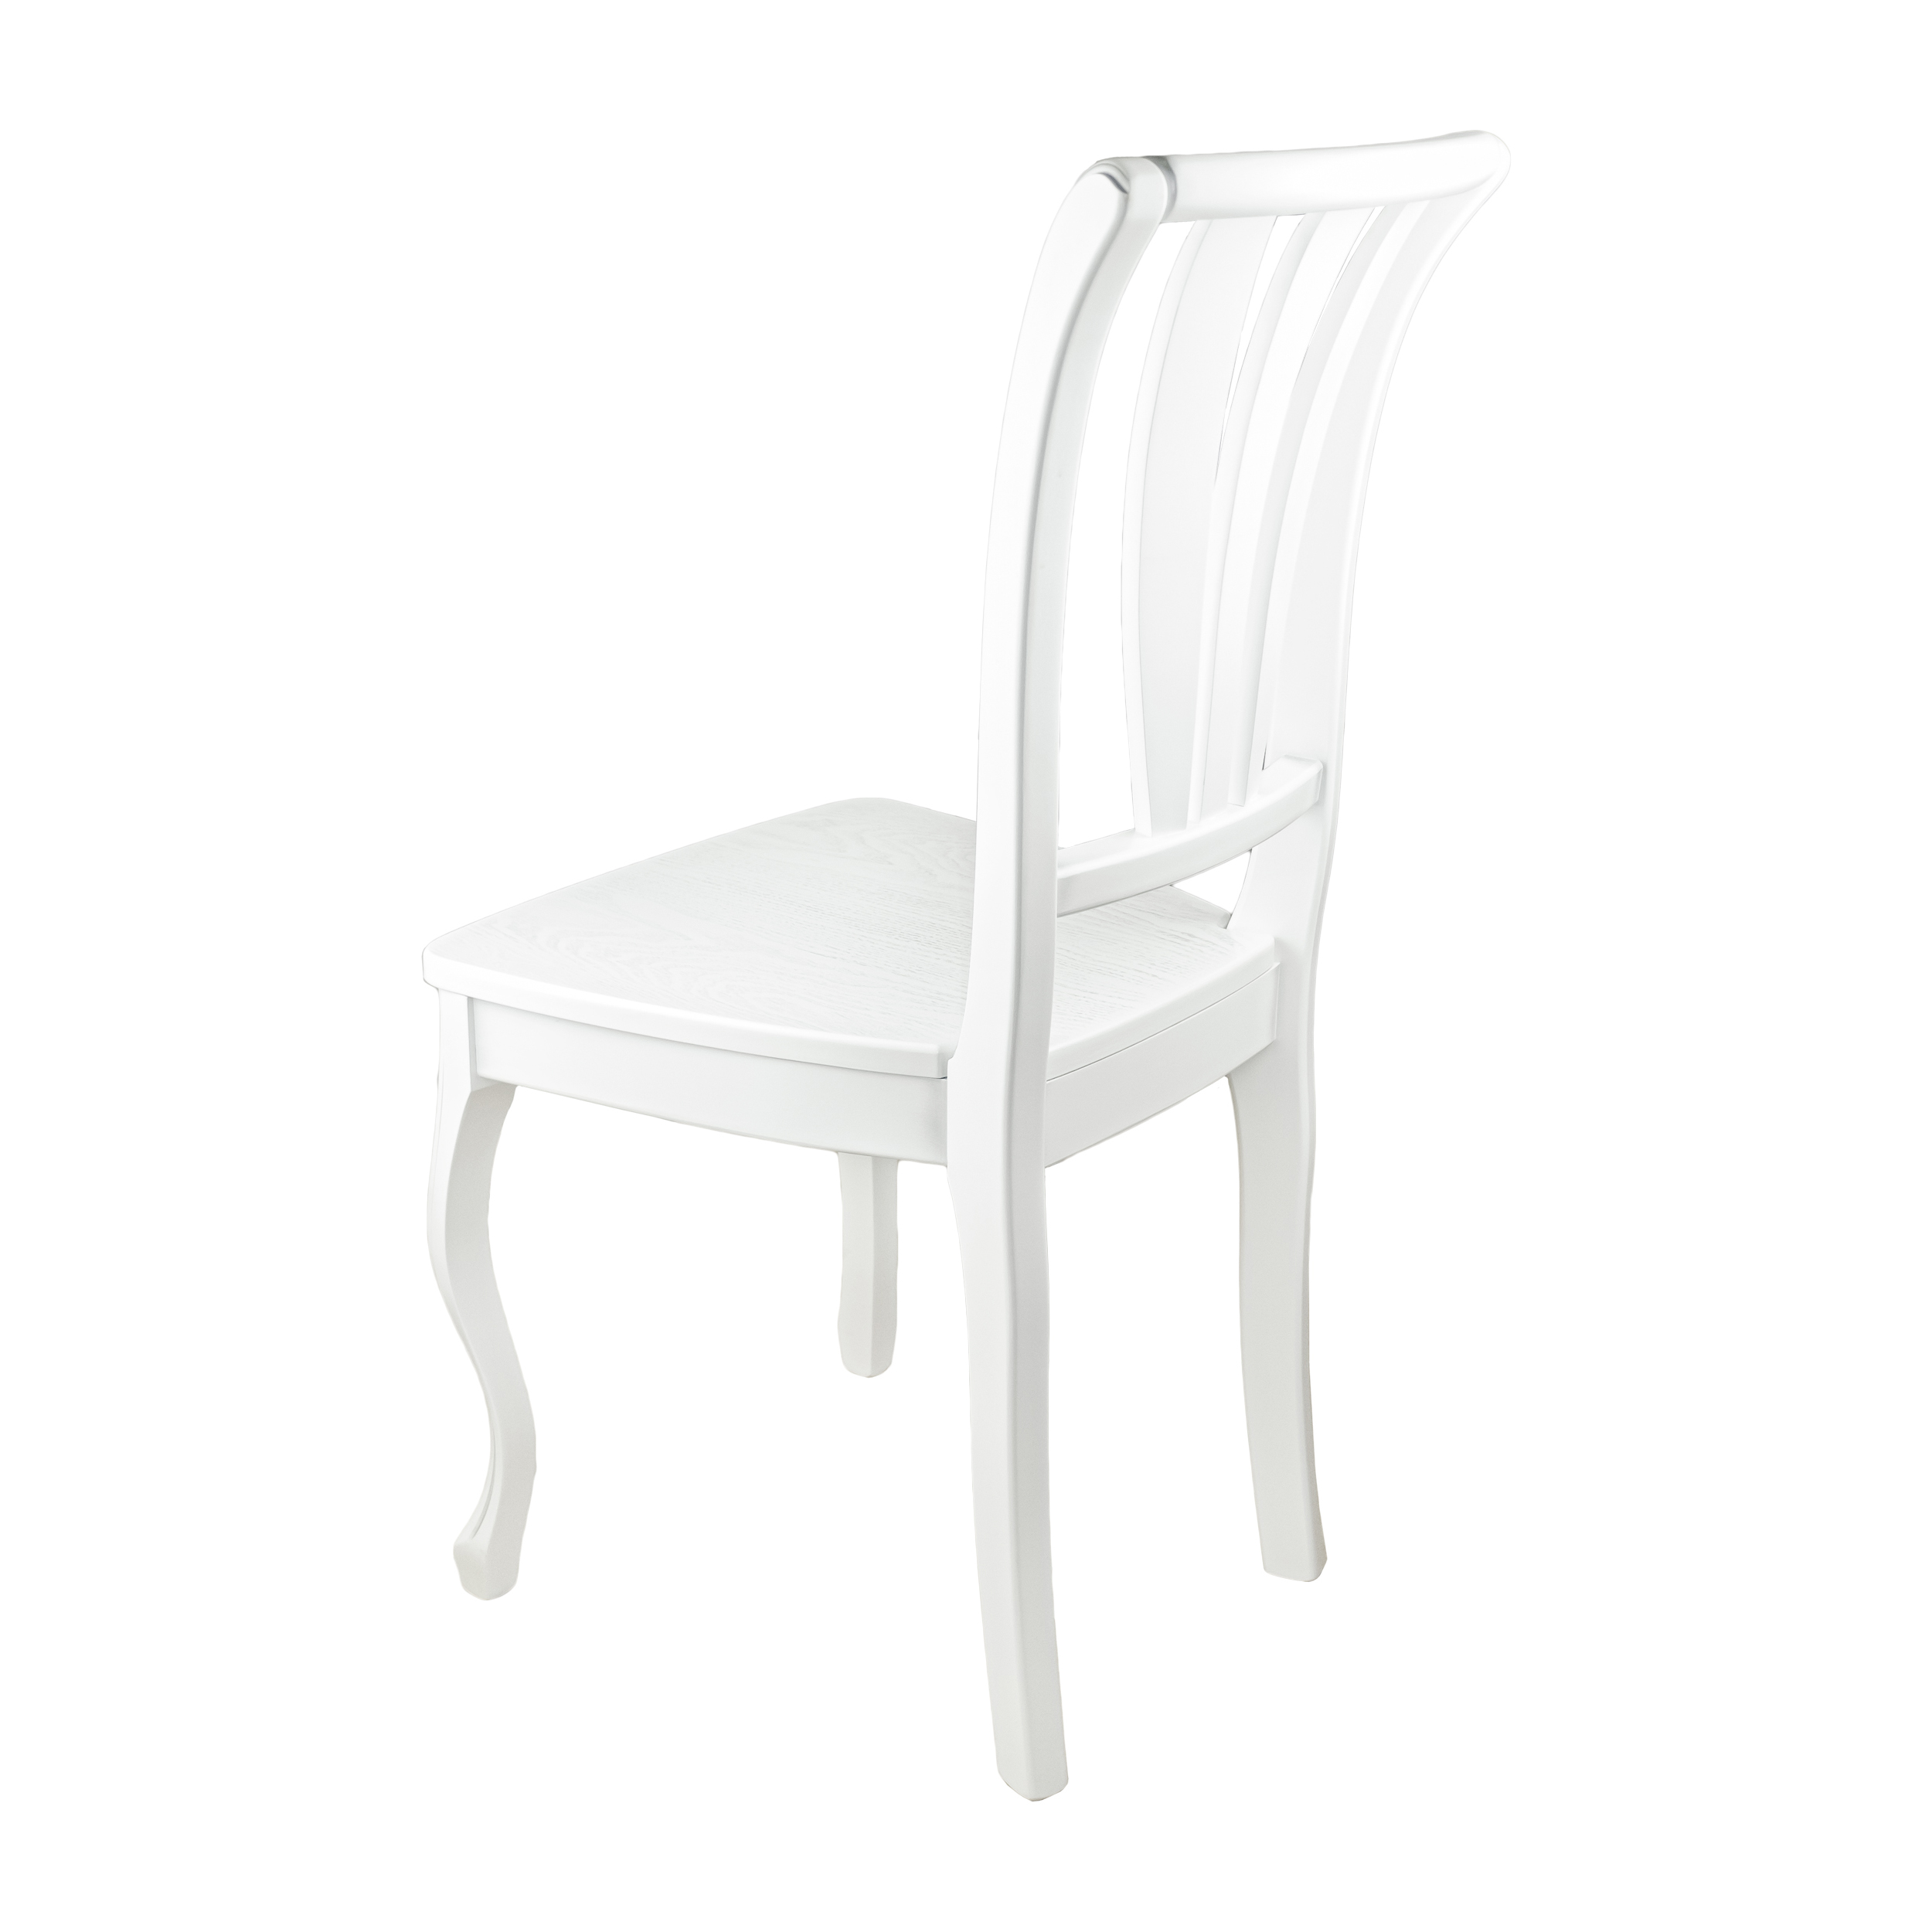 стул белый с патиной серебро